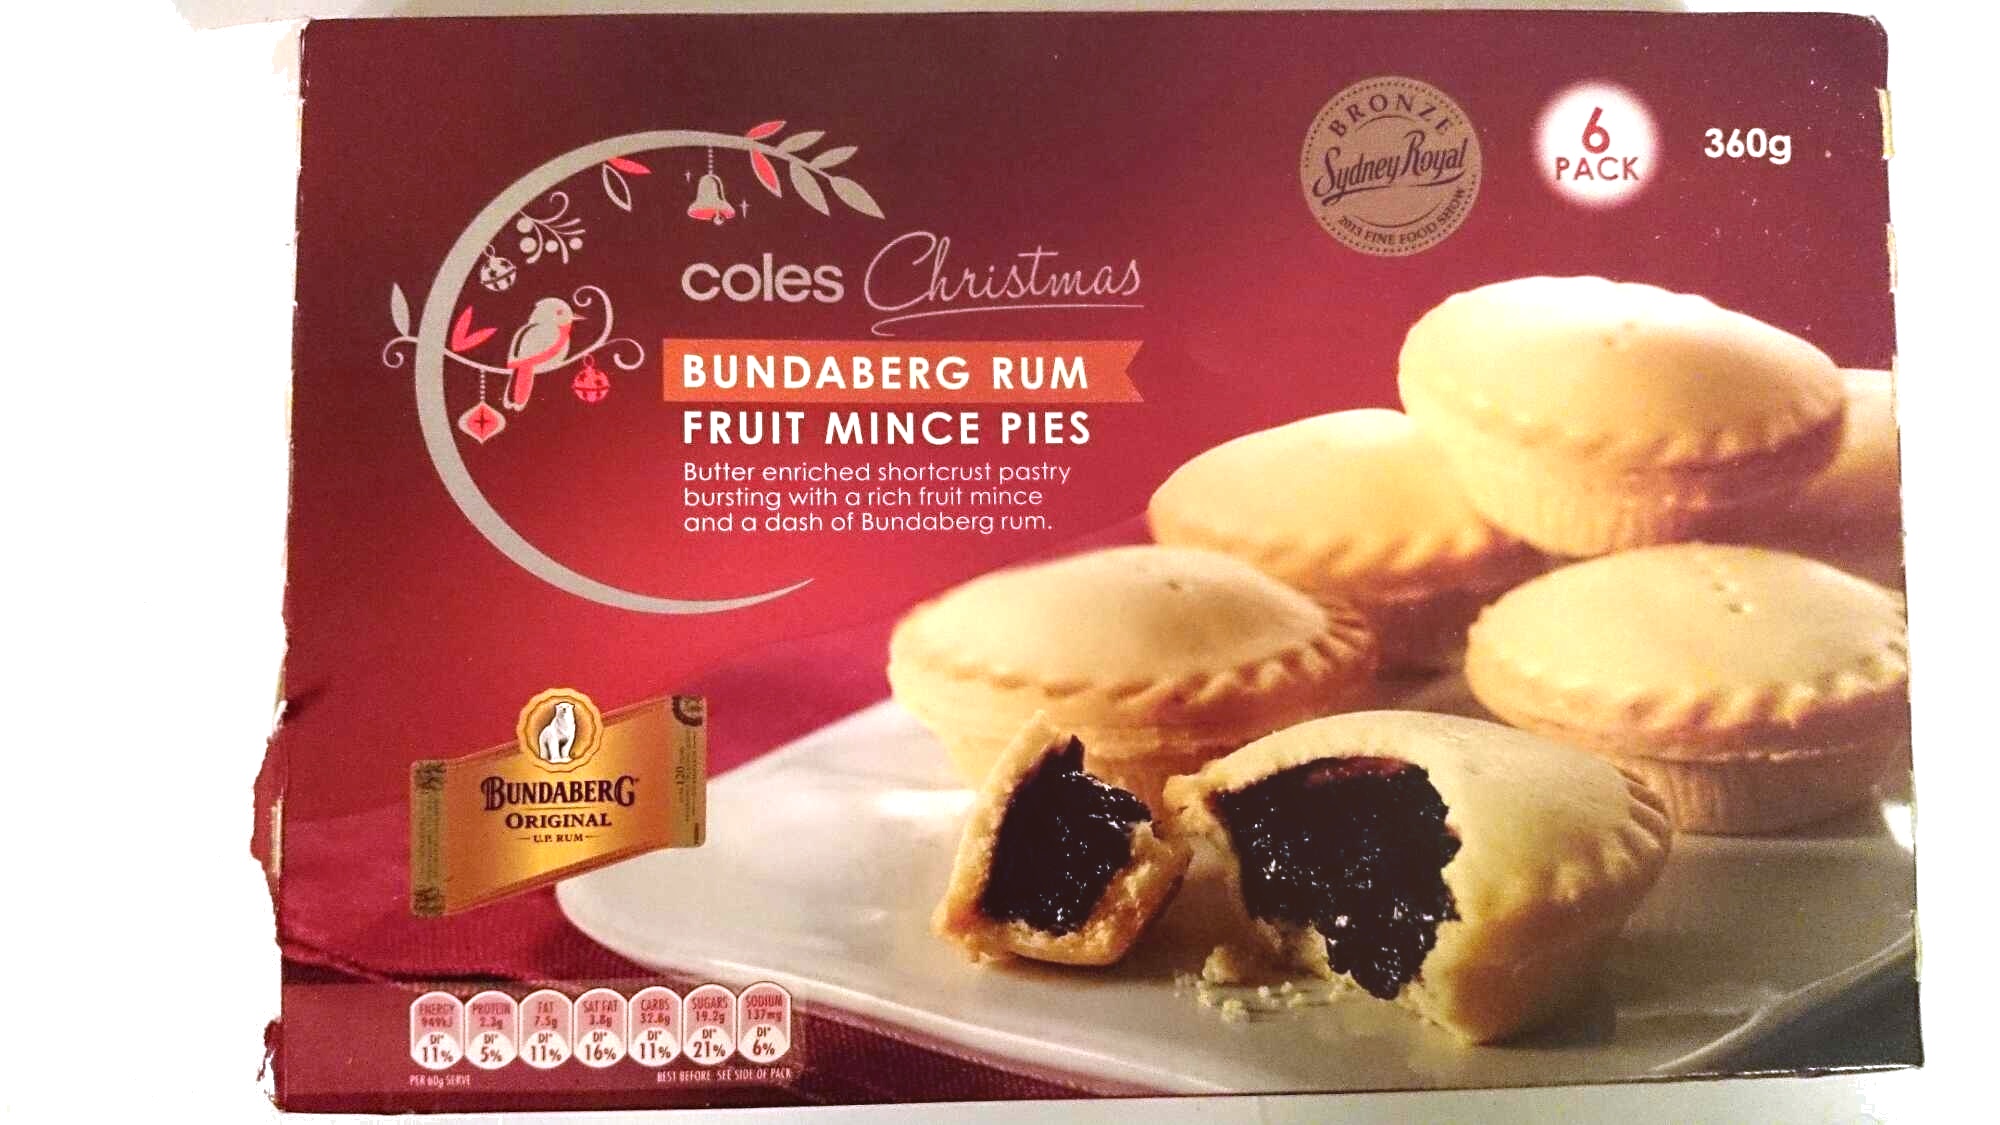 Coles Bundaberg Rum Fruit Mince Pies - Product - en